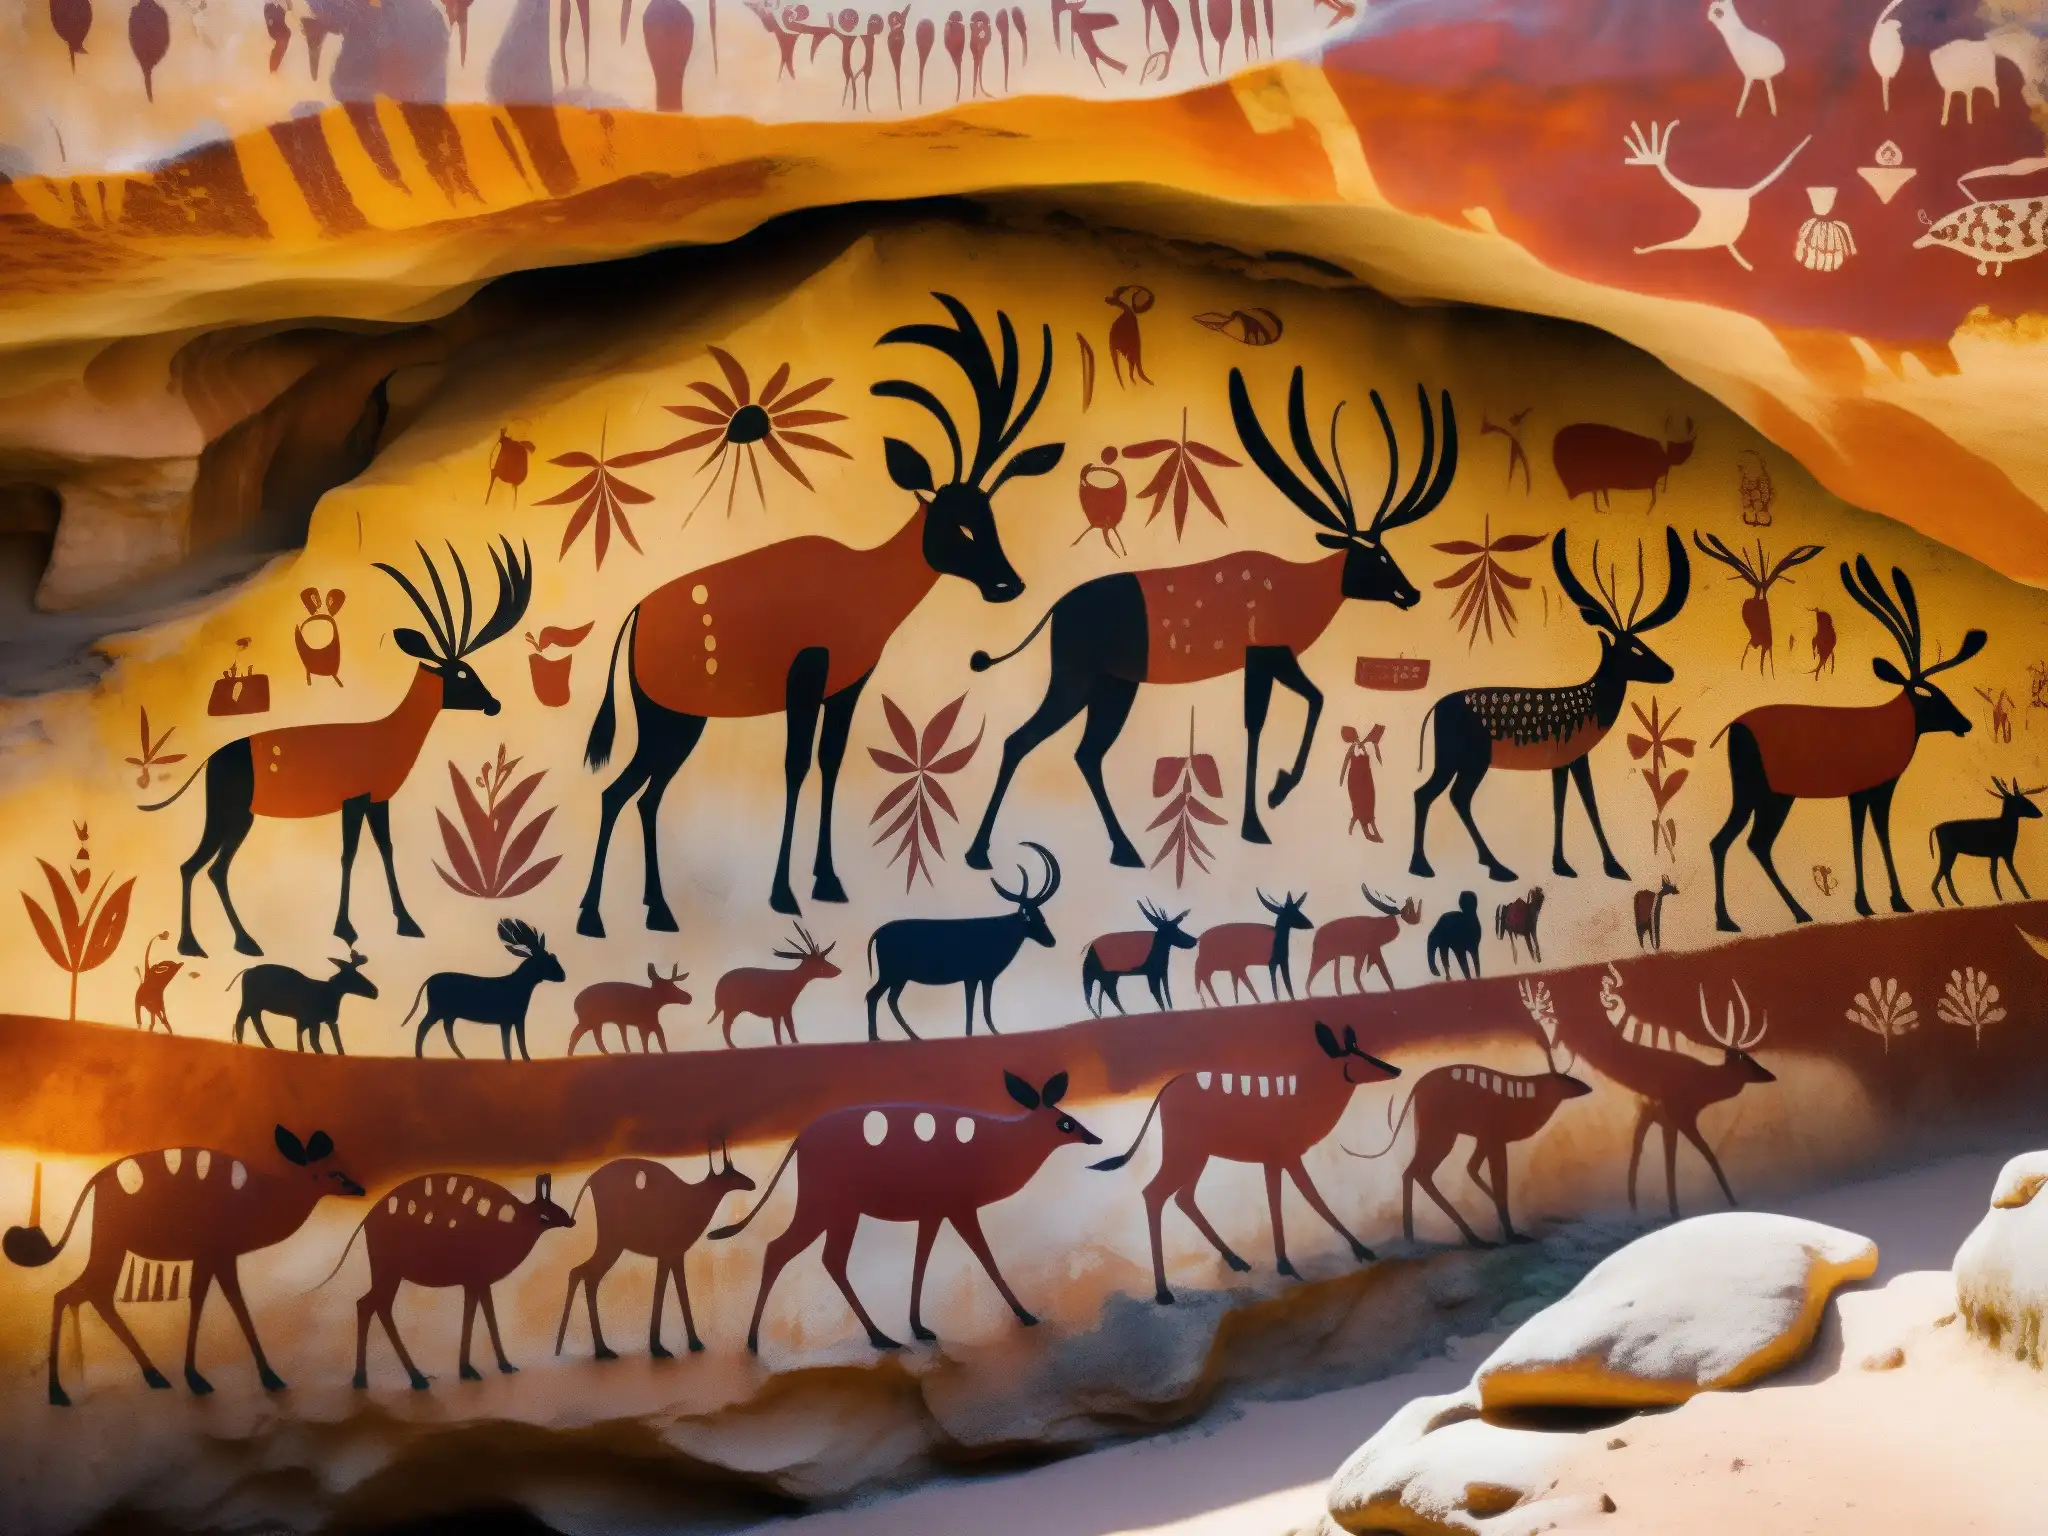 Detallada pintura rupestre en Cueva de la Pileta, con figuras rojas y ocres de animales y manos humanas, mostrando habilidad y arte ancestral